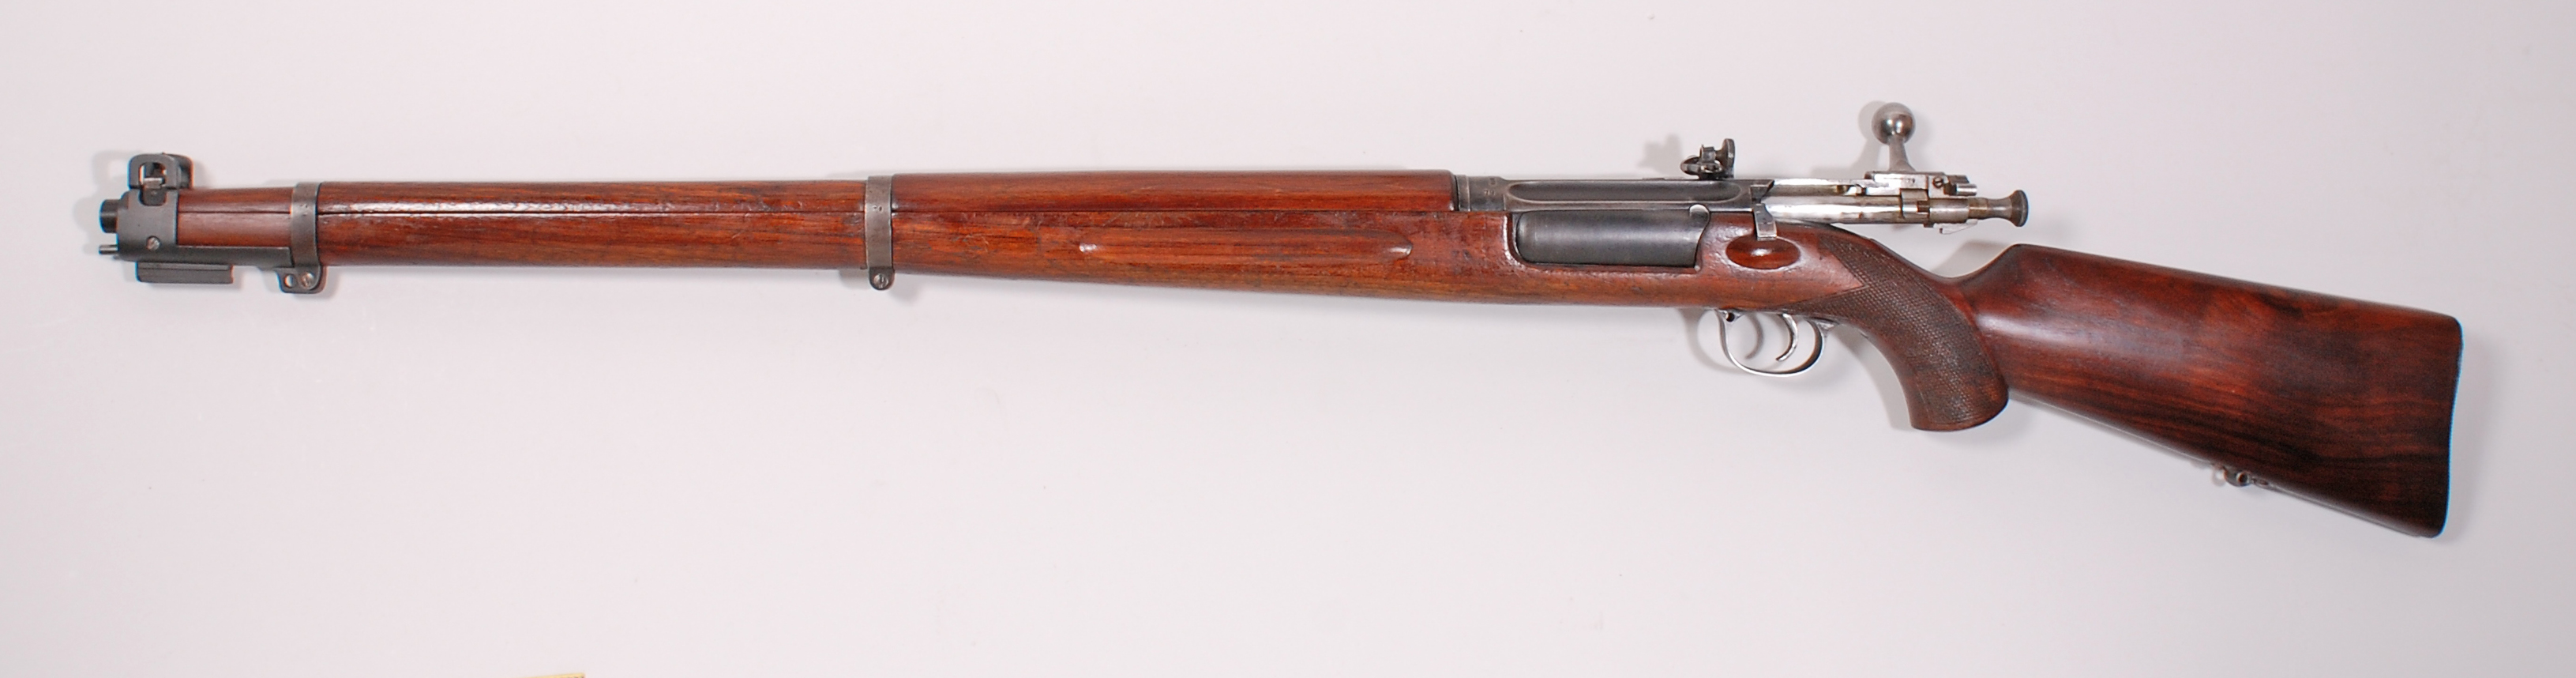 ./guns/rifle/bilder/Rifle-Kongsberg-Krag-M1923-79-2.jpg